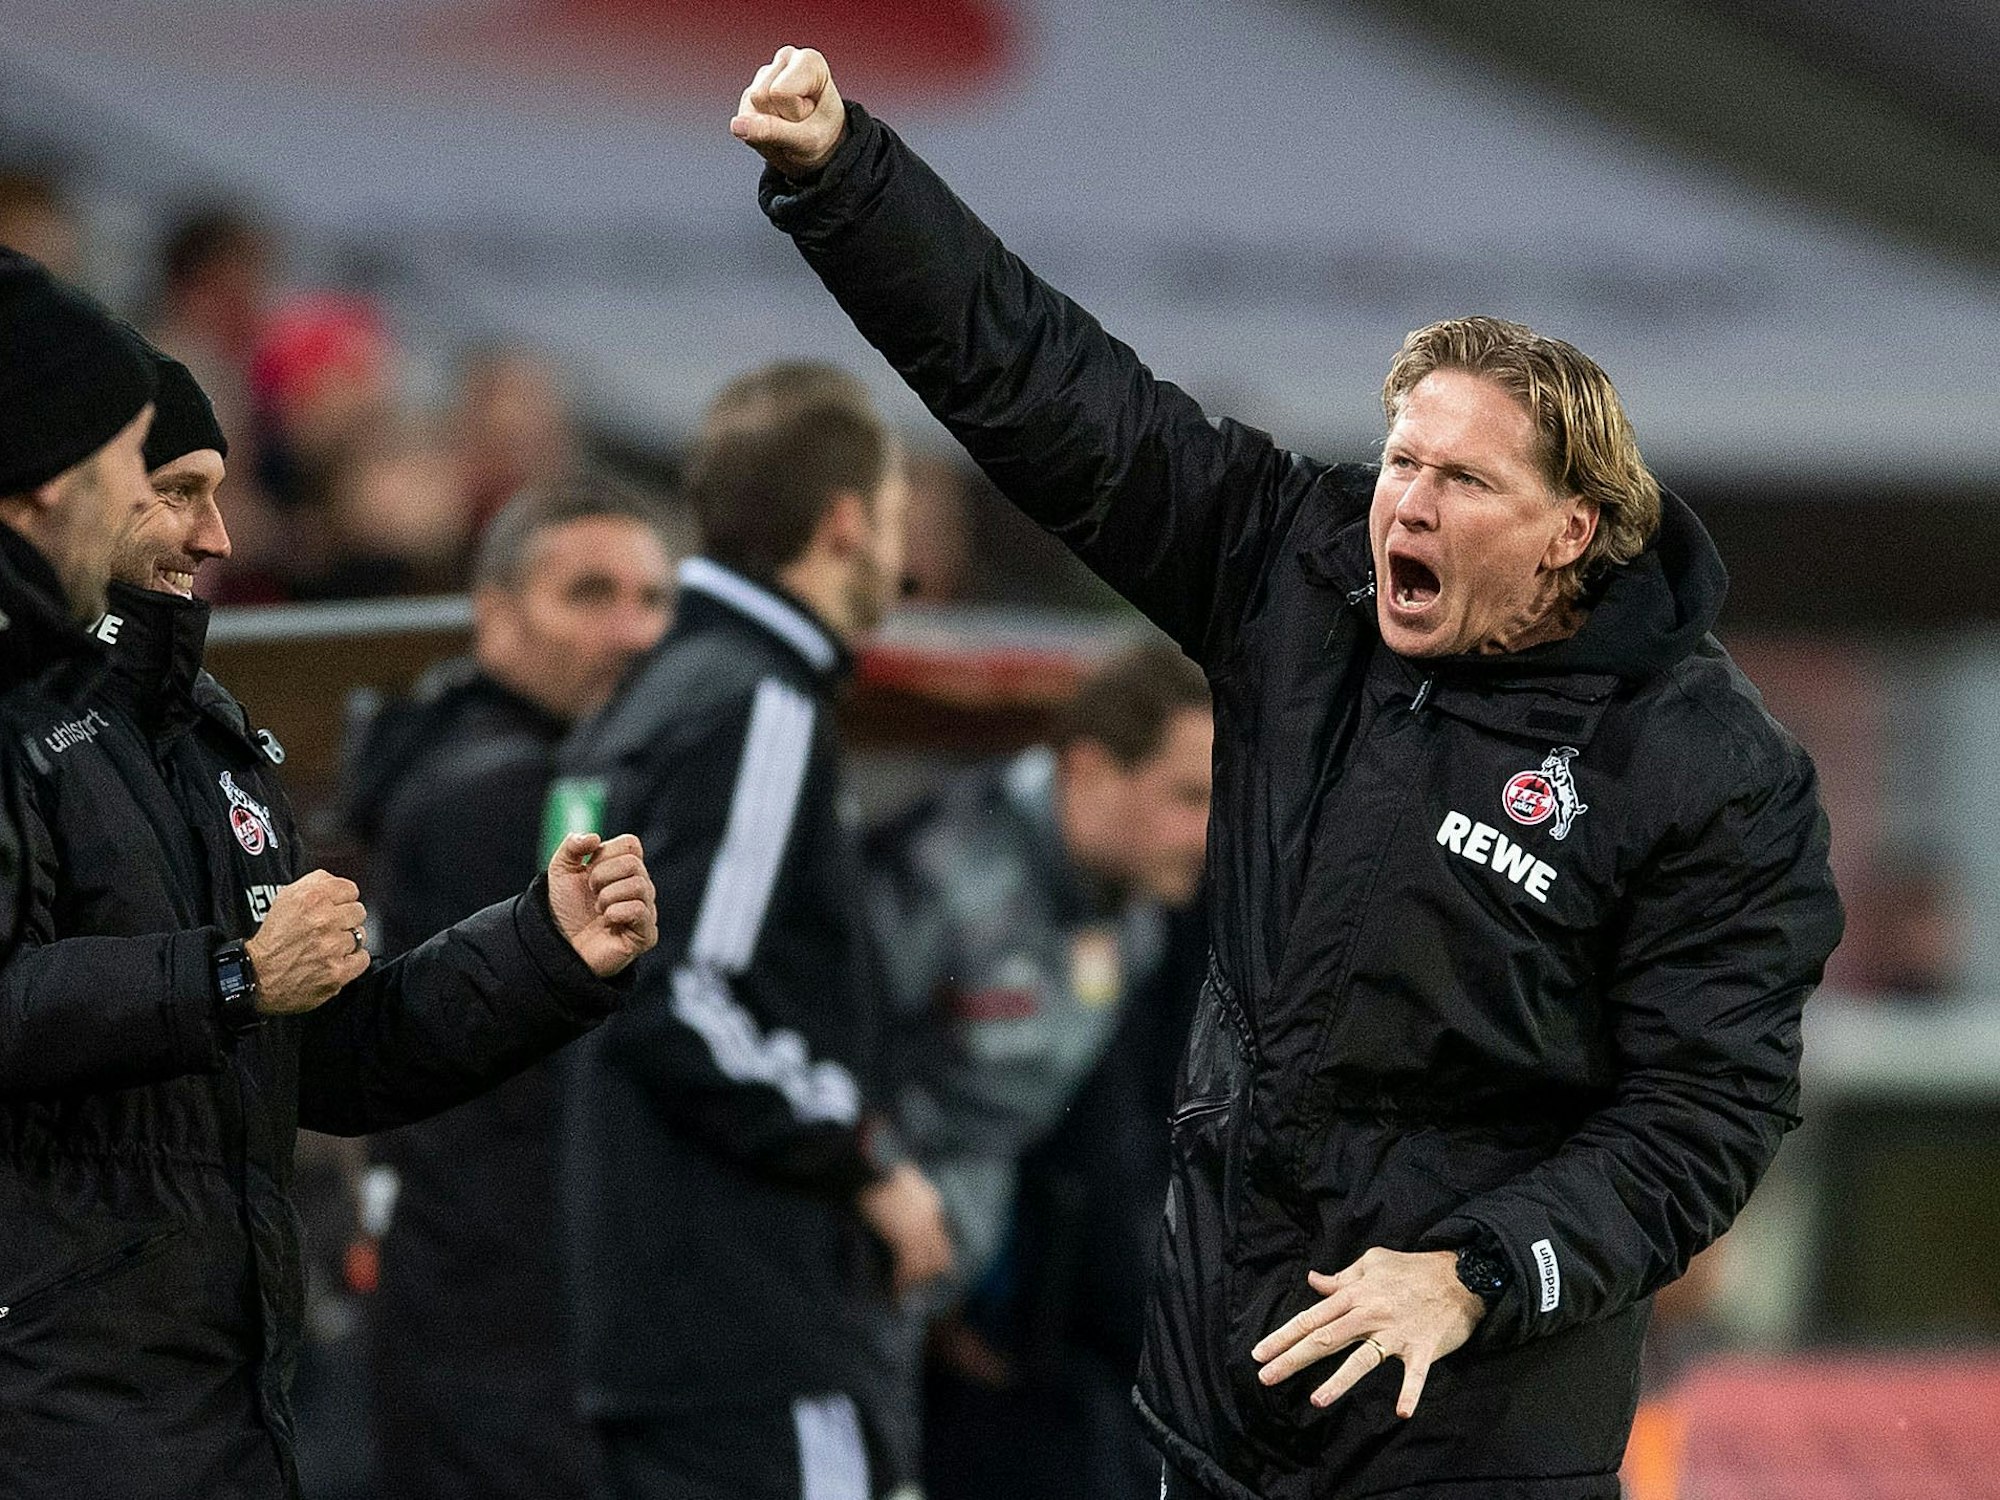 Kölns Trainer Markus Gisdol jubelt nach dem Schlusspfiff über den 2:0-Sieg gegen Leverkusen.